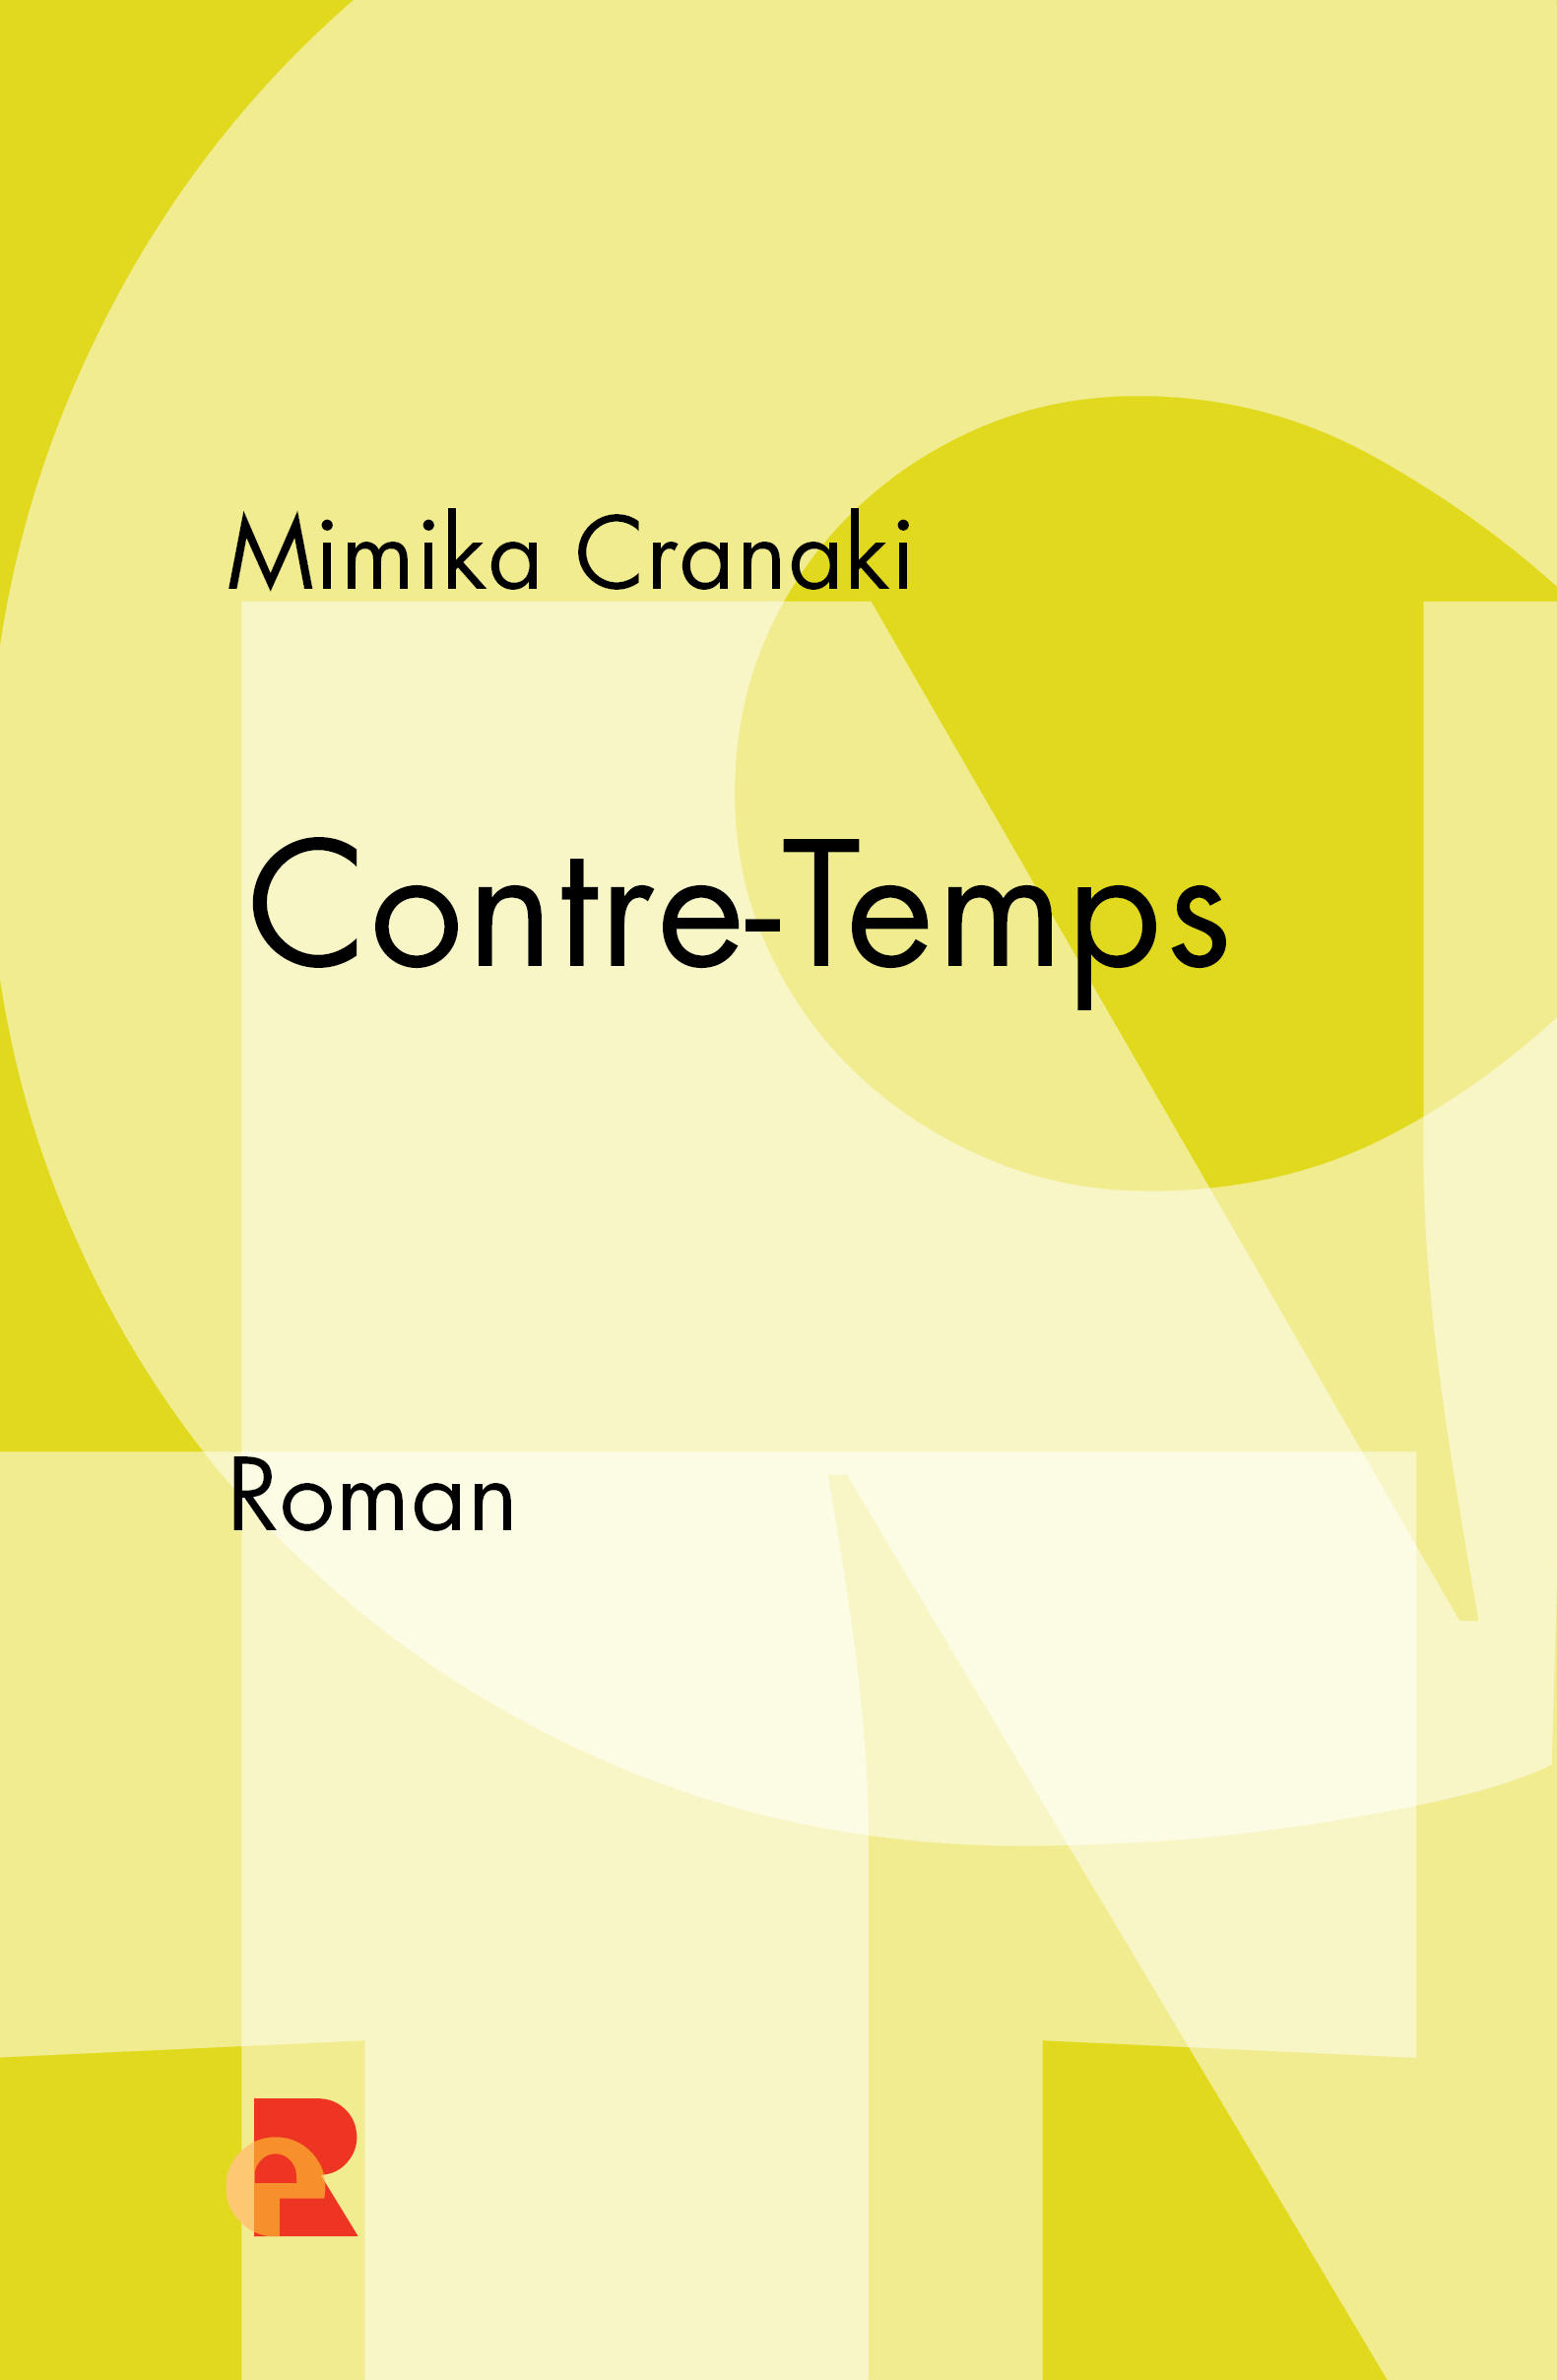 Mimika Cranaki: Contre-Temps